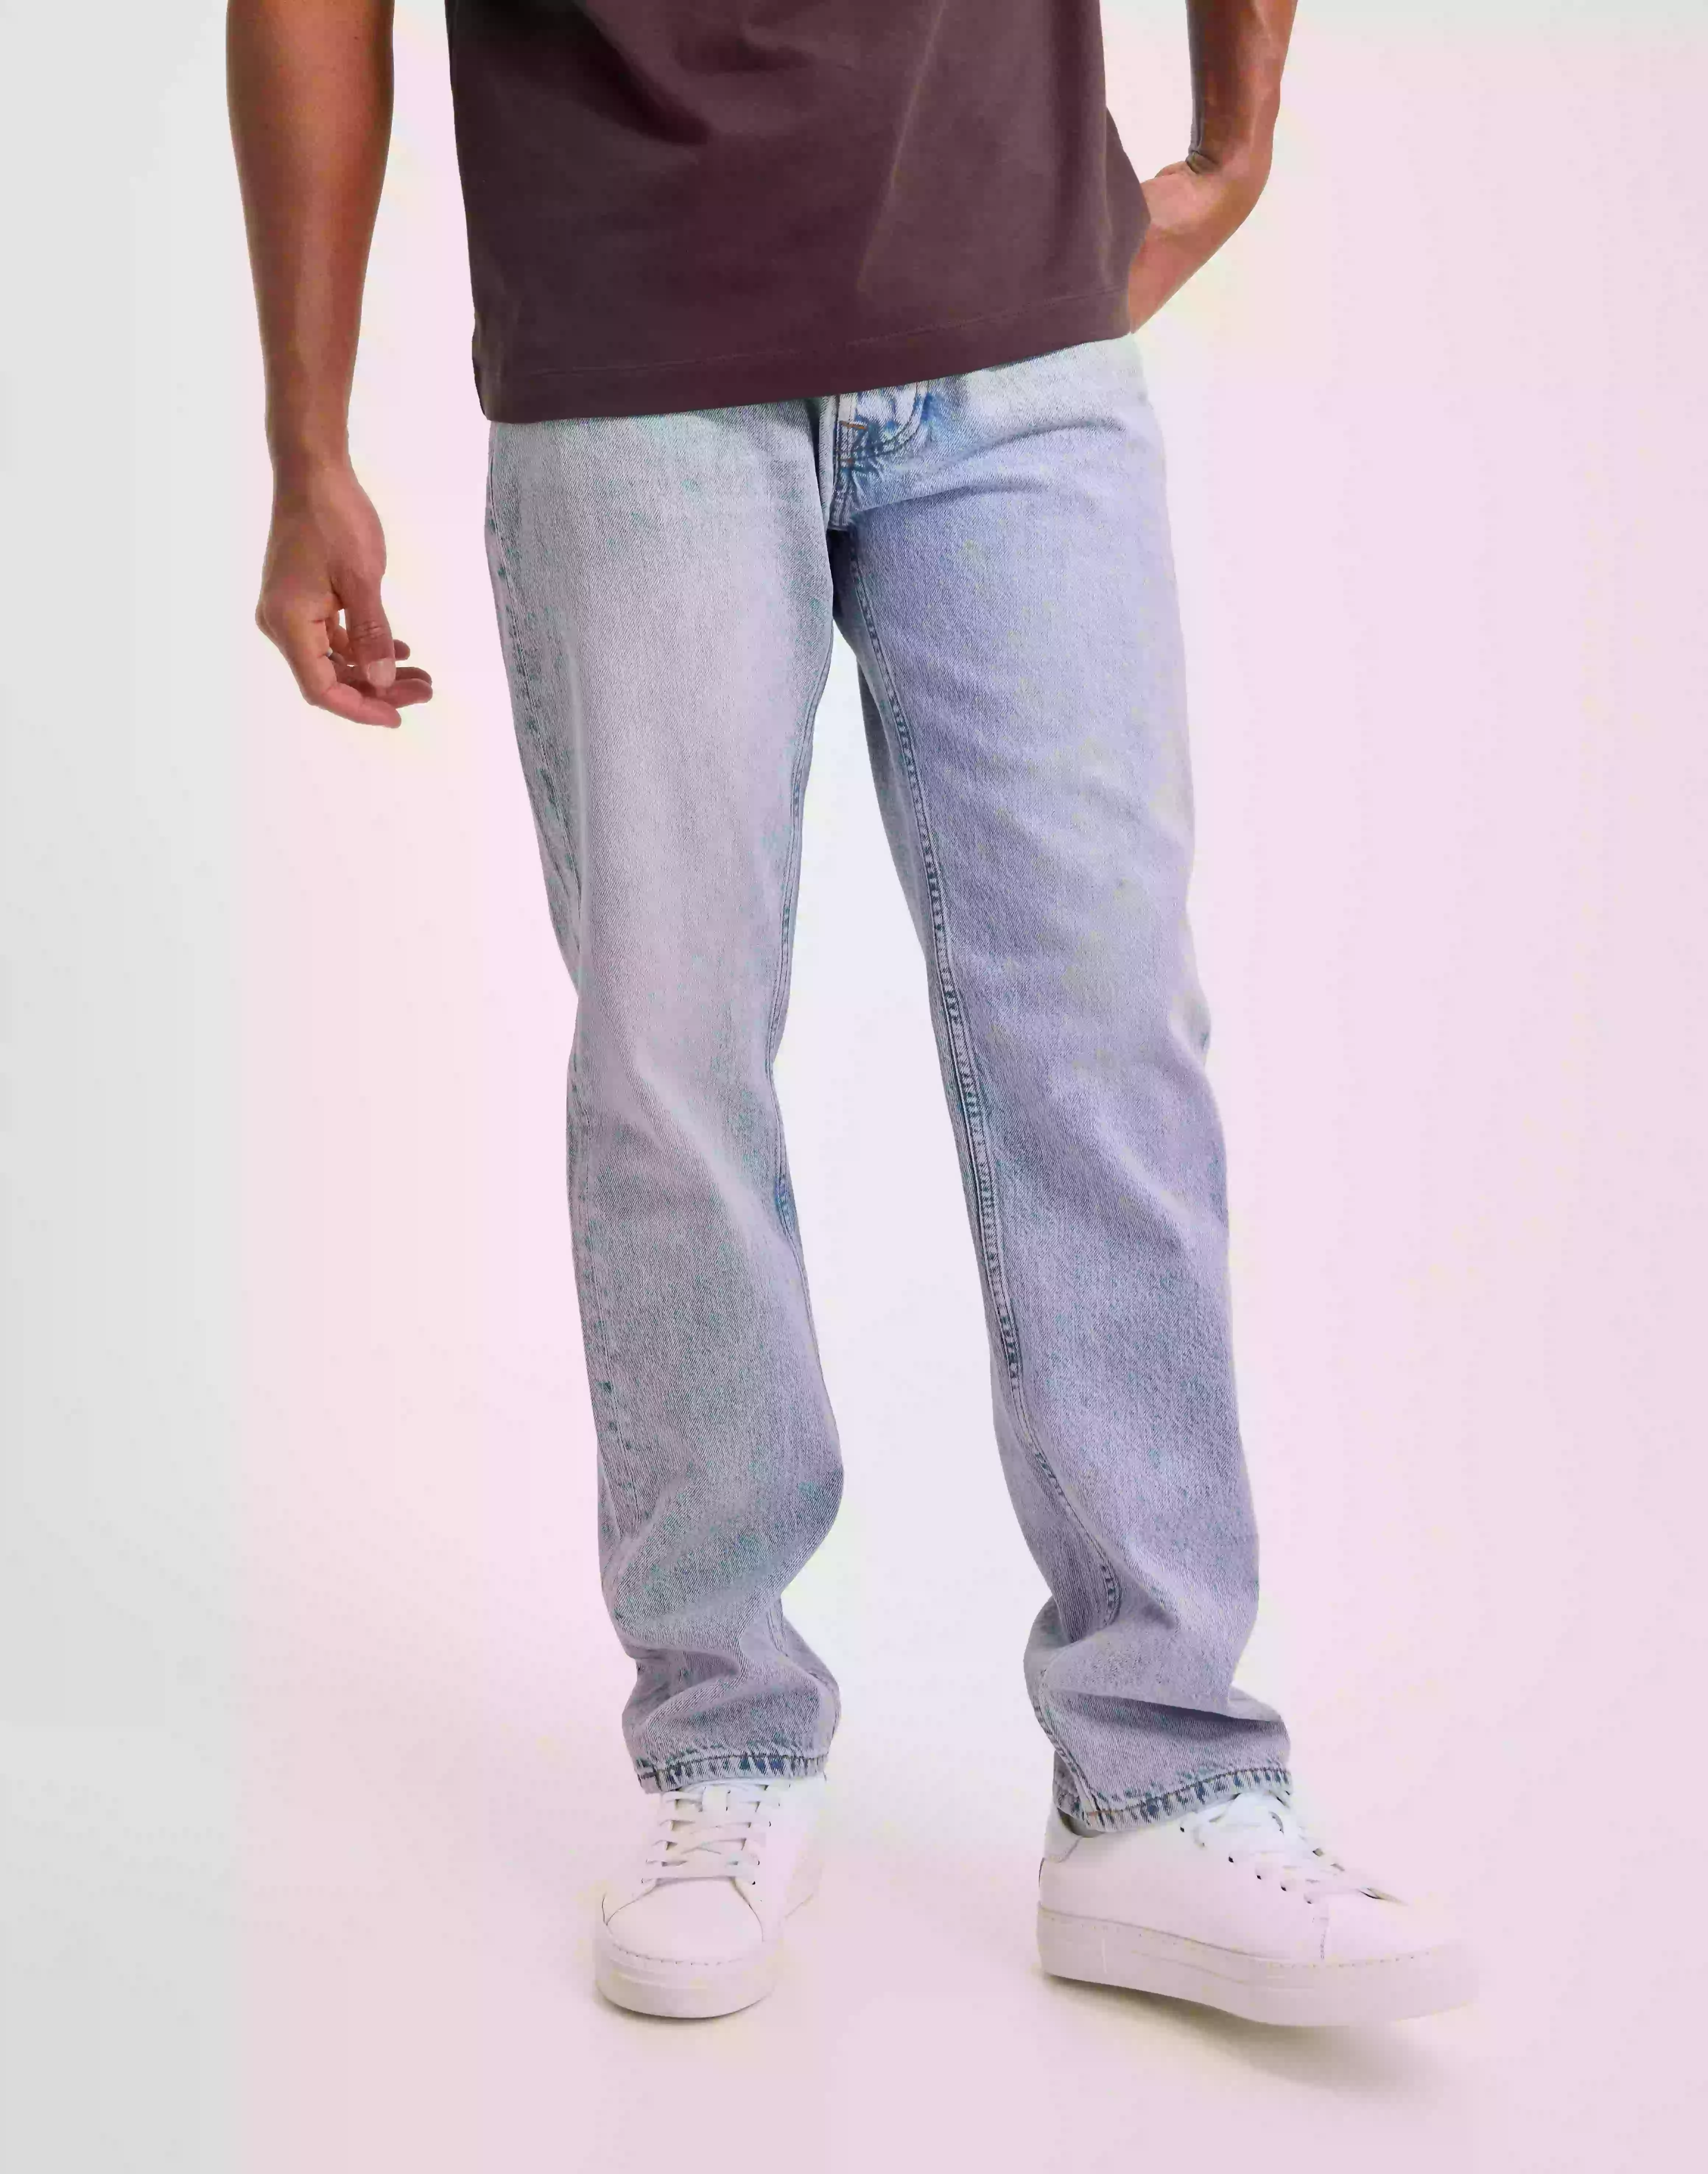 Samsøe Samsøe Roger jeans 14606 Straight jeans Snow